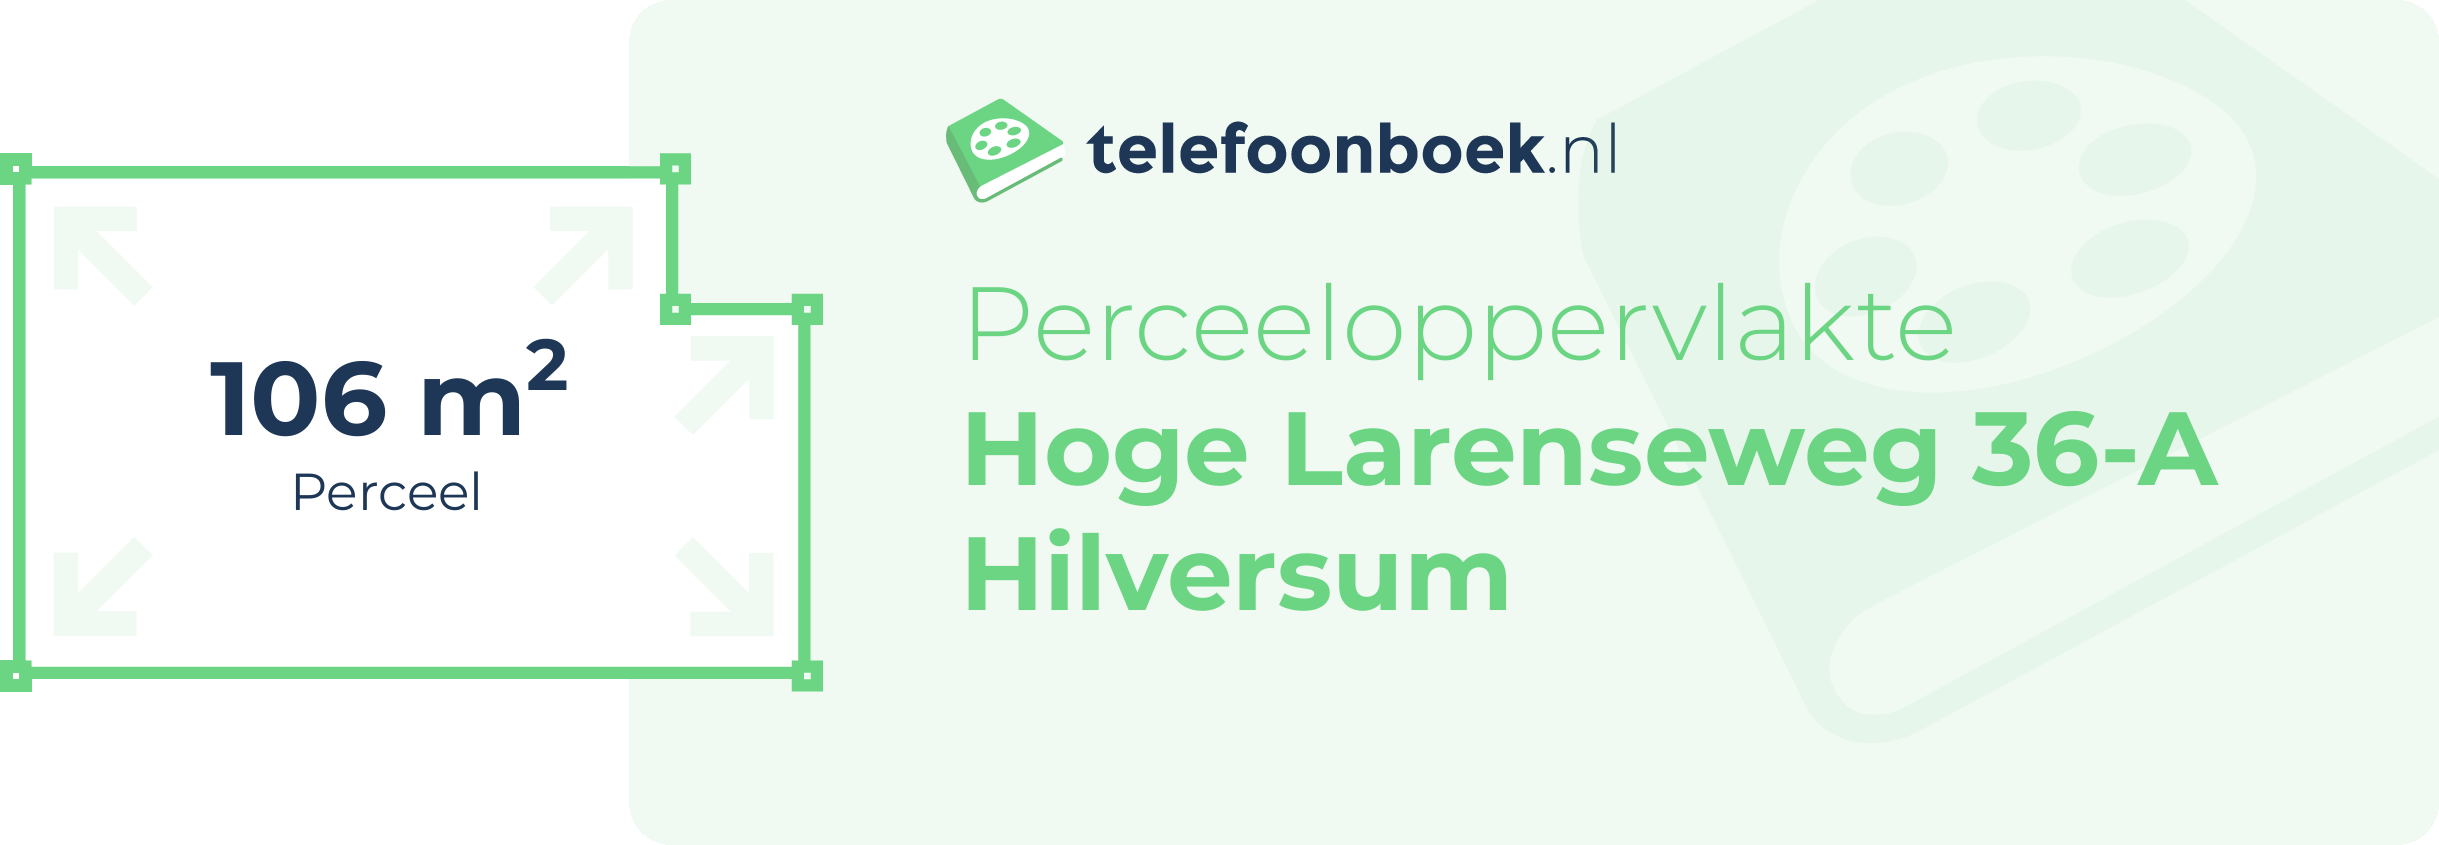 Perceeloppervlakte Hoge Larenseweg 36-A Hilversum